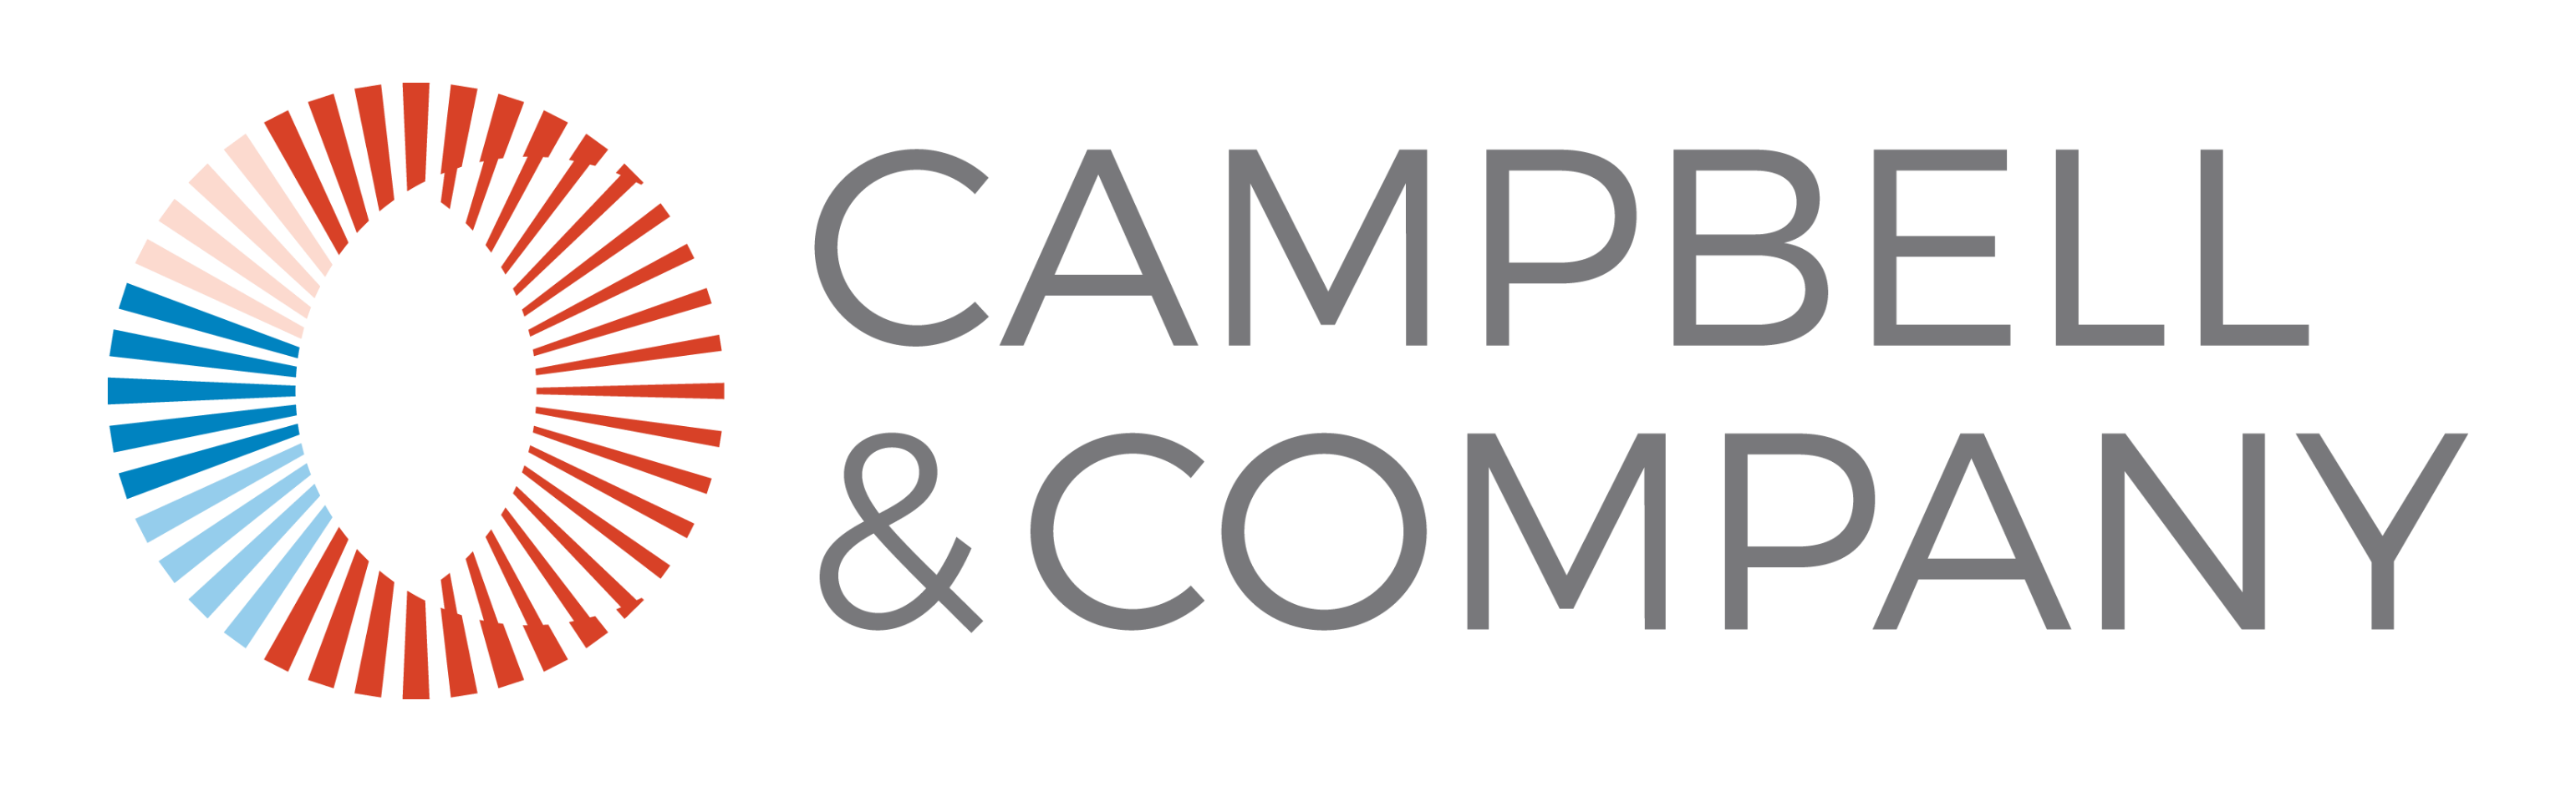 Campbell & Company logo